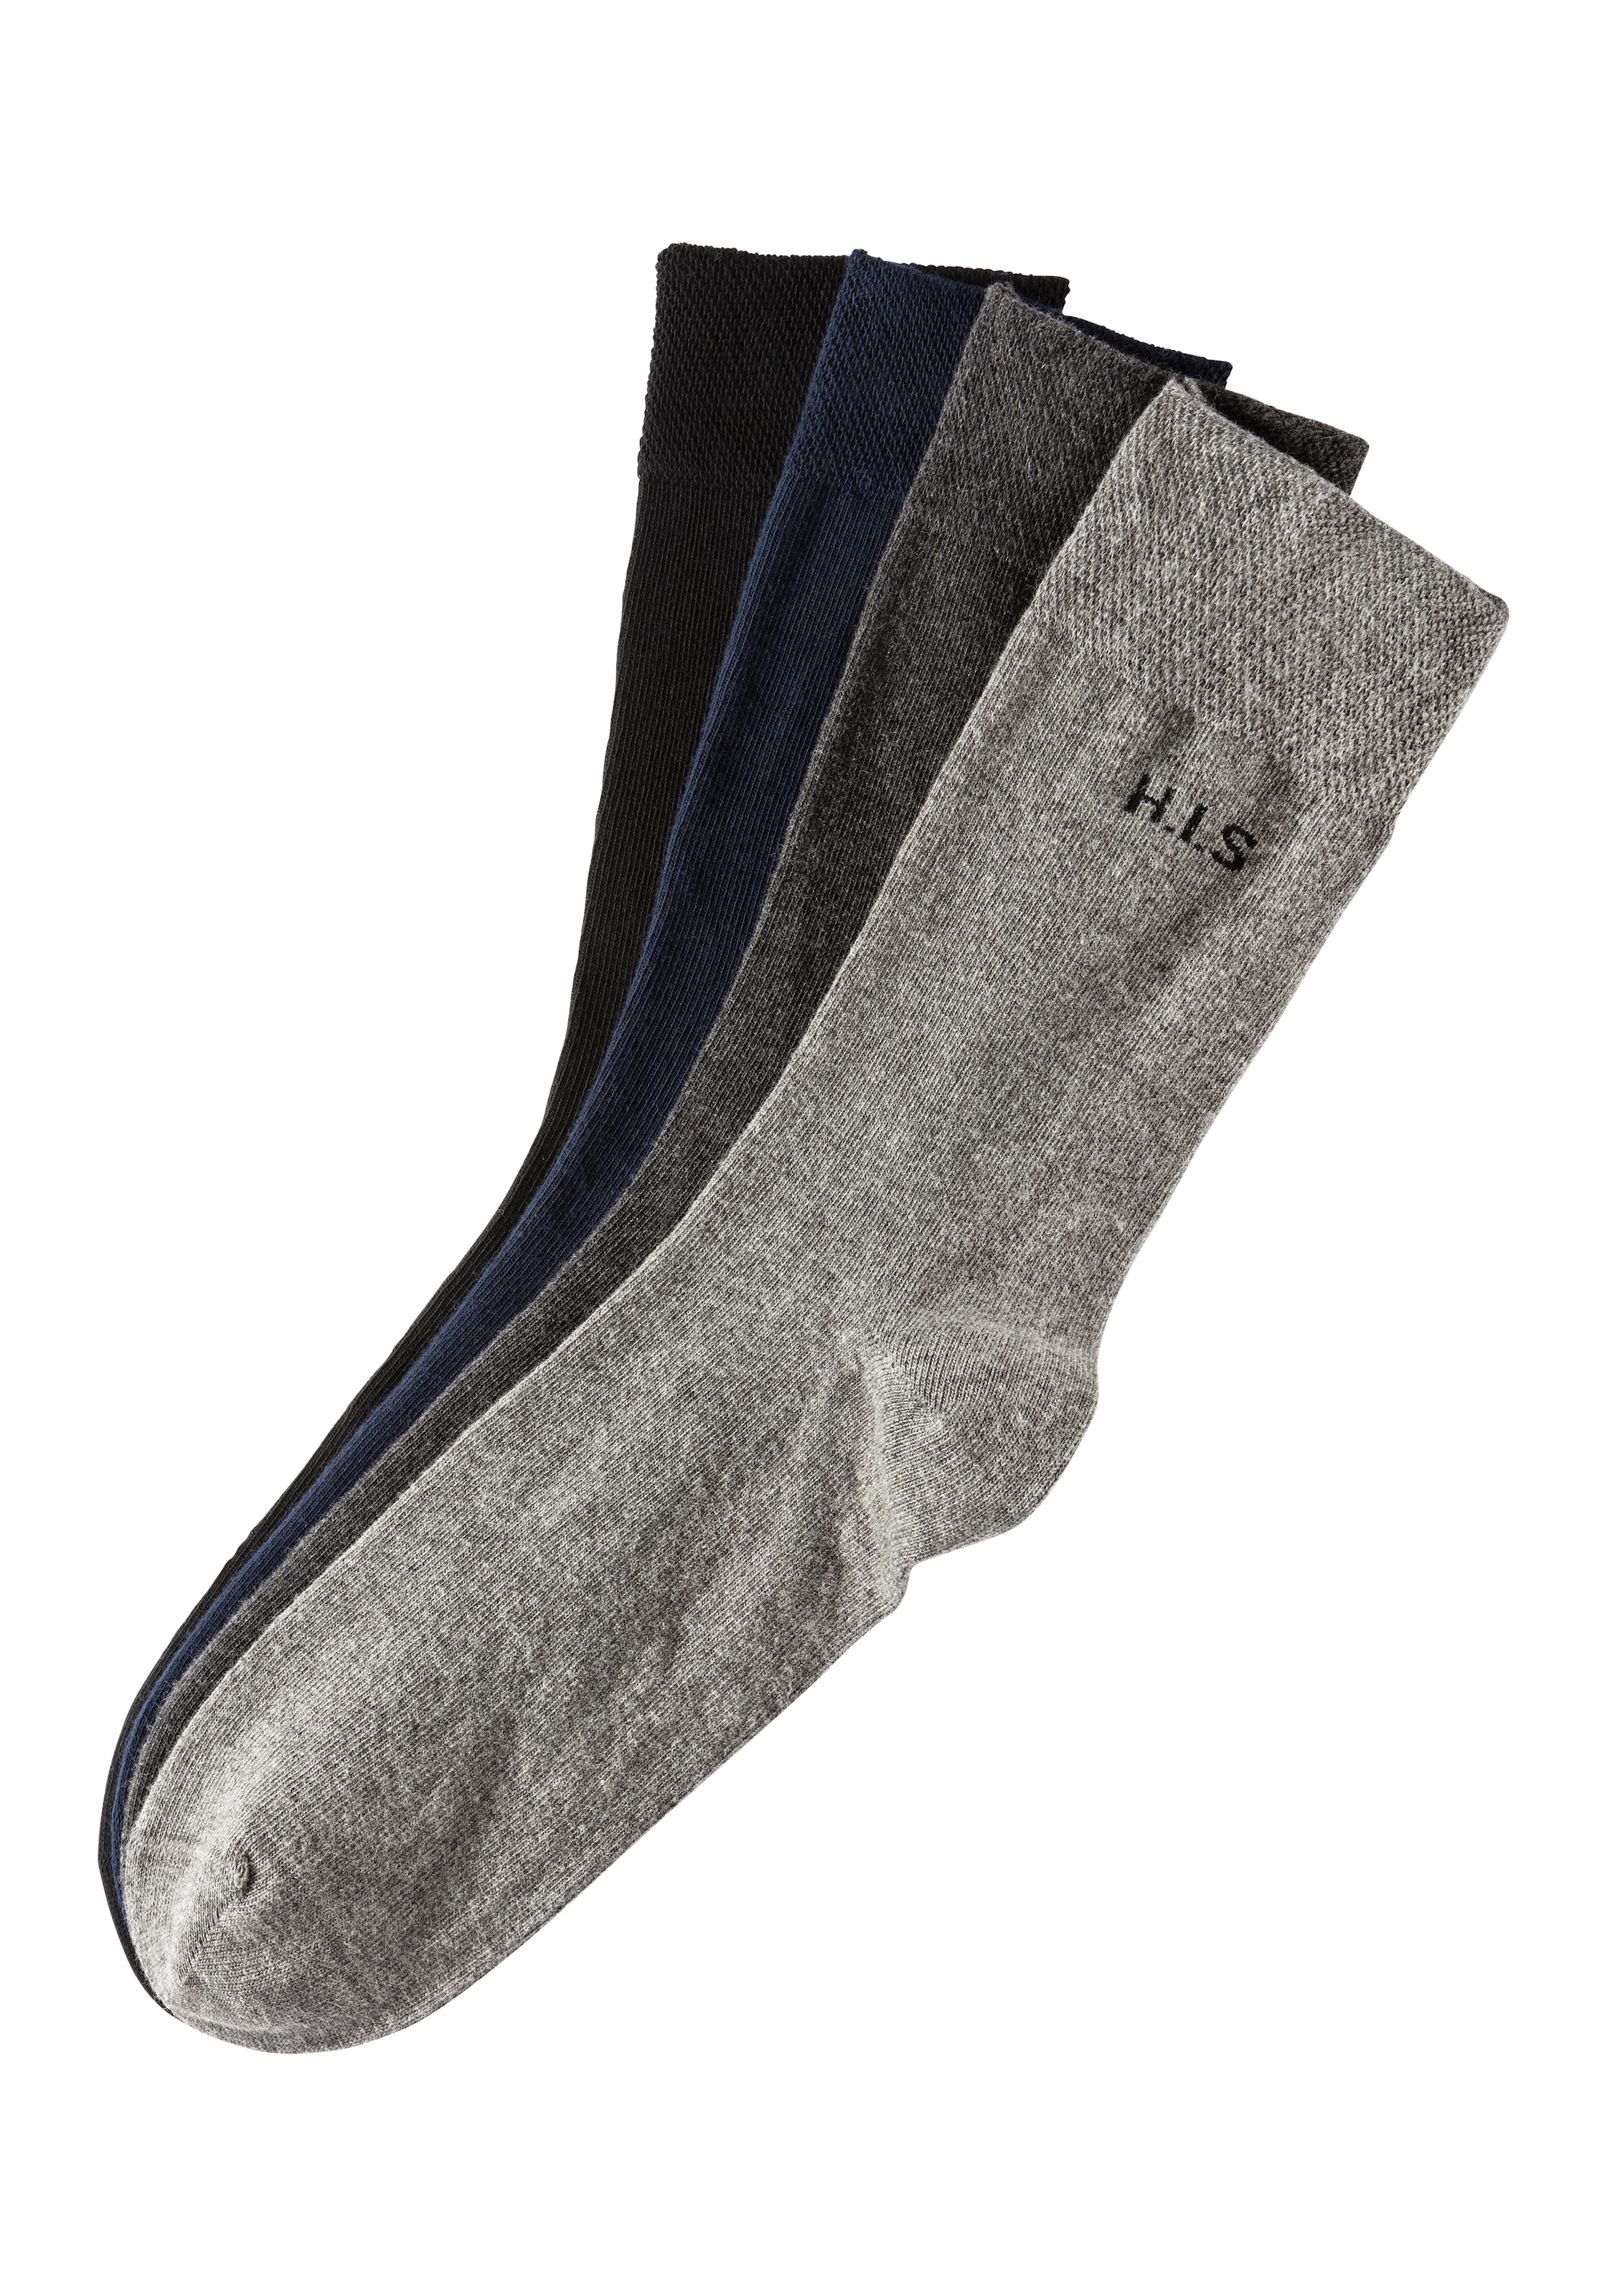 H.I.S Socken, (4 Paar), mit druckfreiem Bündchen günstig kaufen